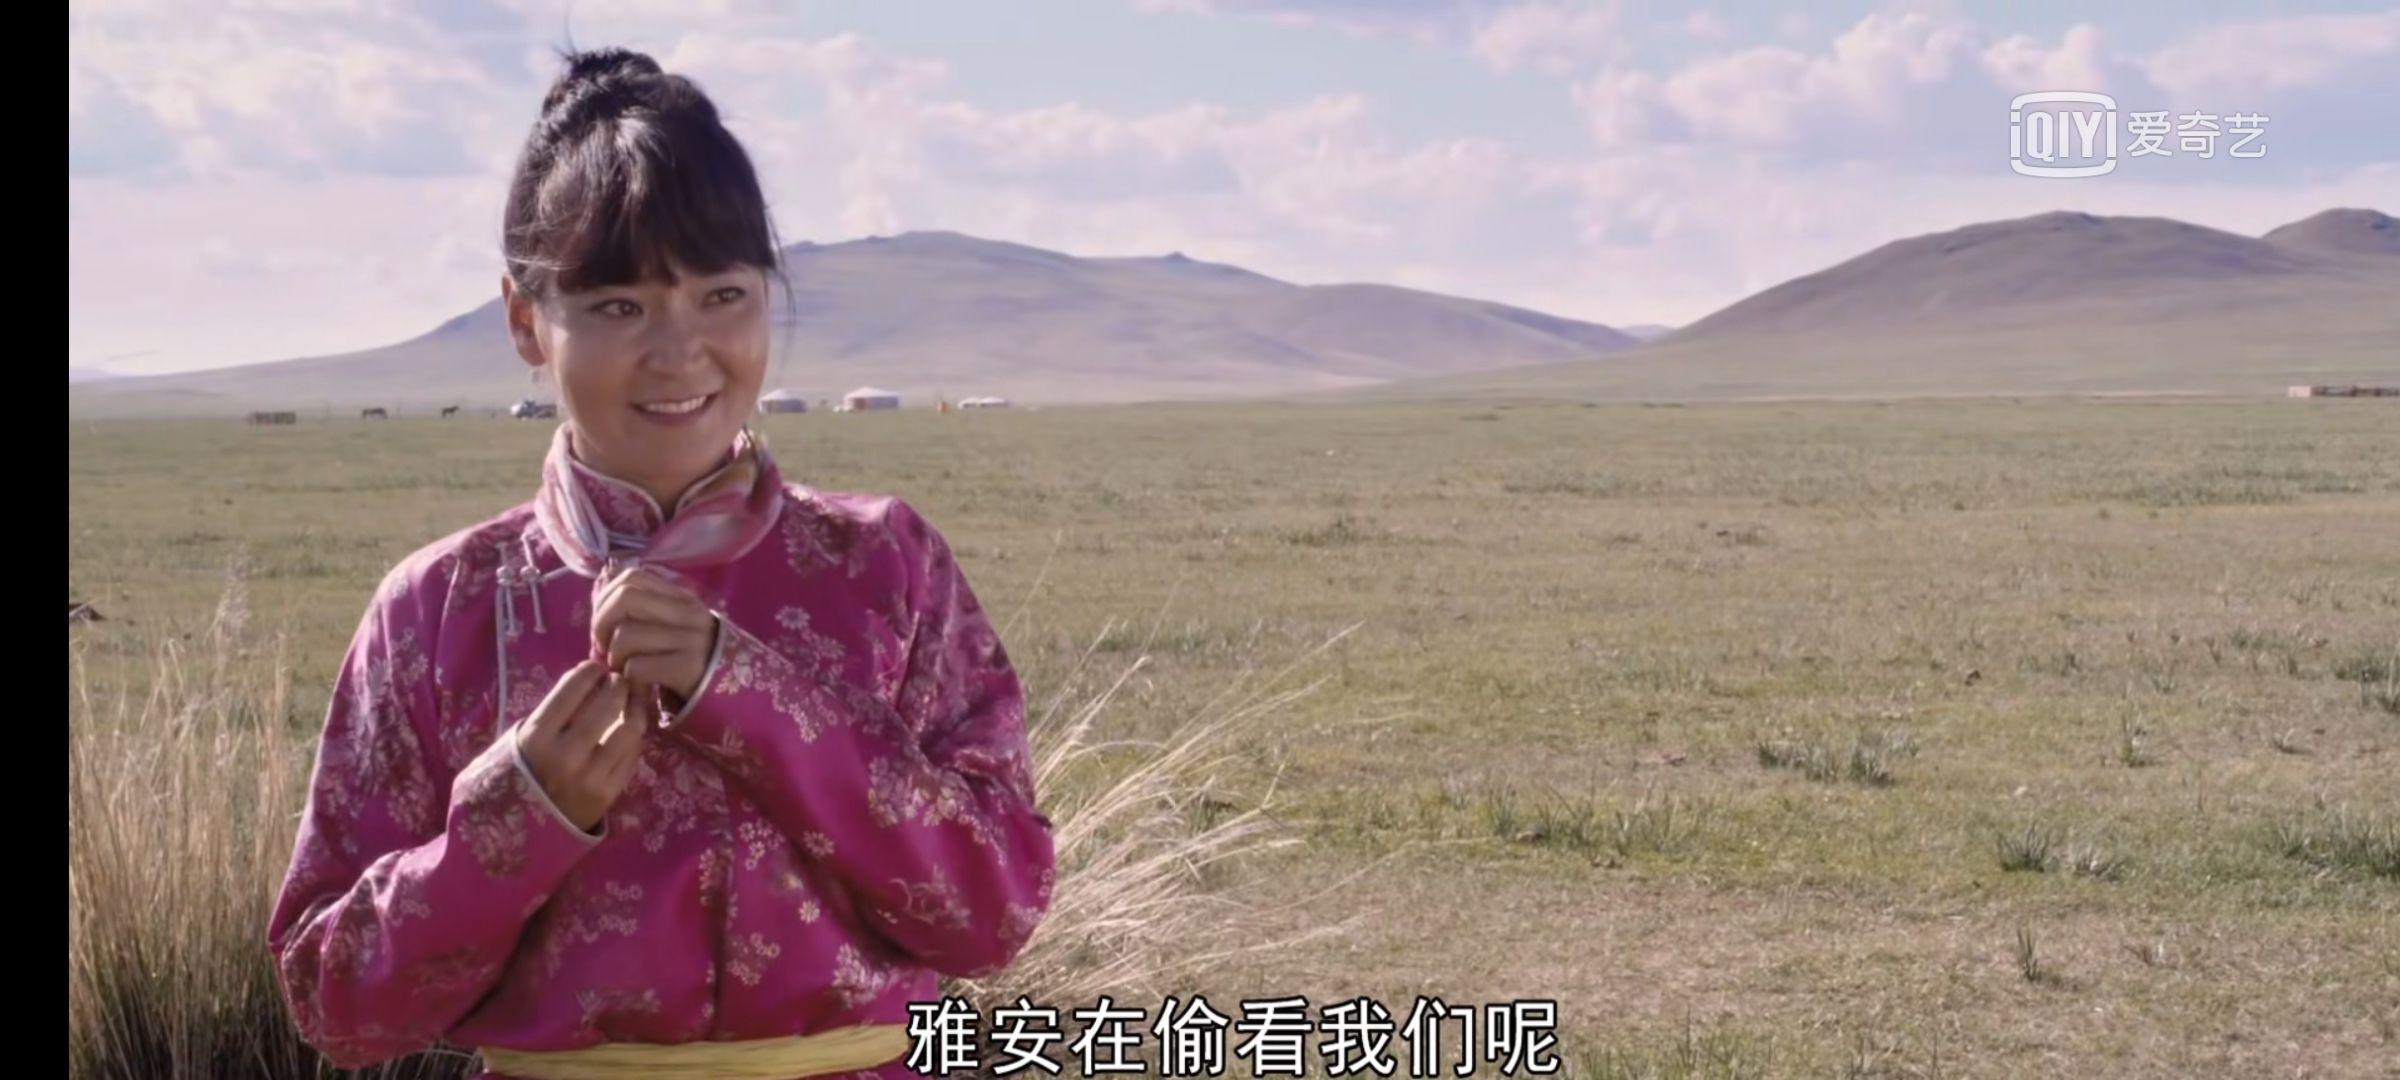 如何解析蒙古电影《黄金宝藏》? 